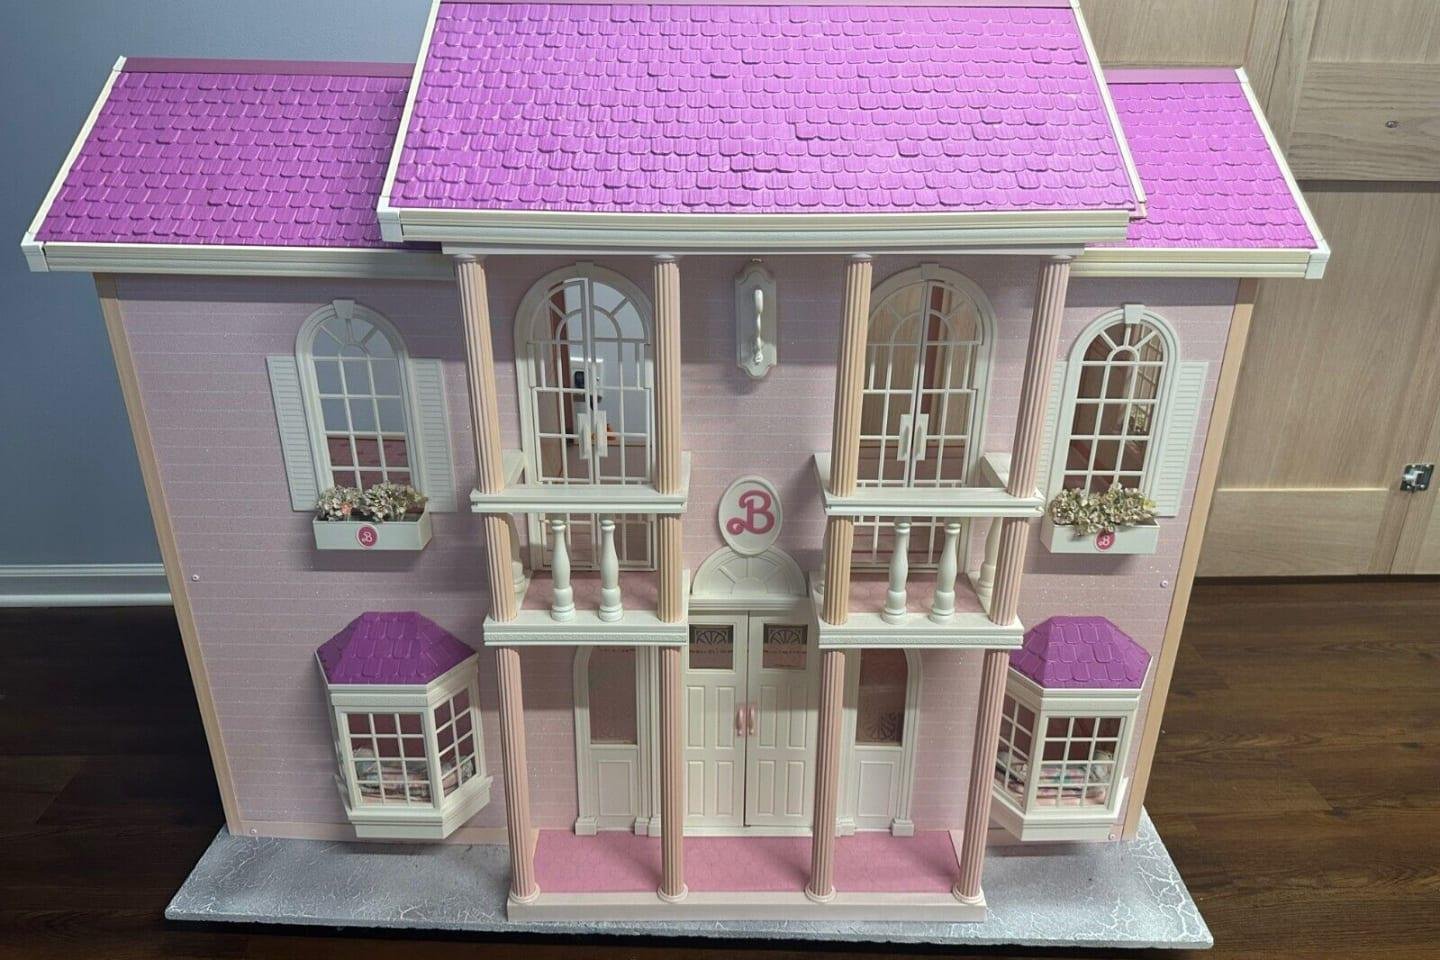 Esta casa lançada na década de 90 é o item mais caro na coleção de acessórios da Barbie de qualquer pessoa. (Fonte: Mentalfloss/Reprodução)